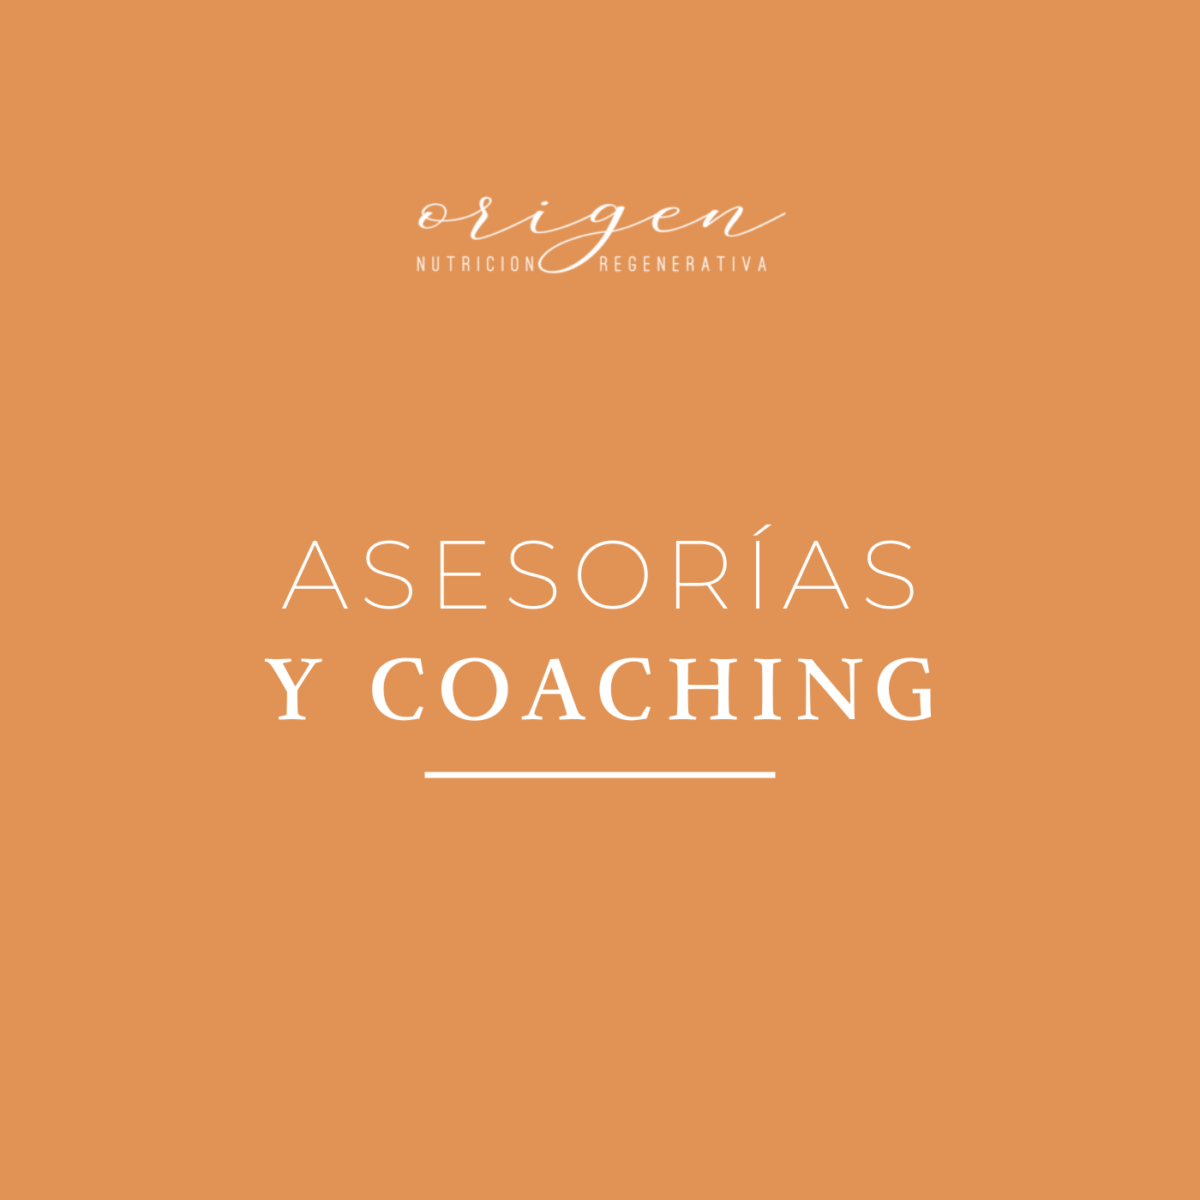 Asesorías 1:1 y coaching